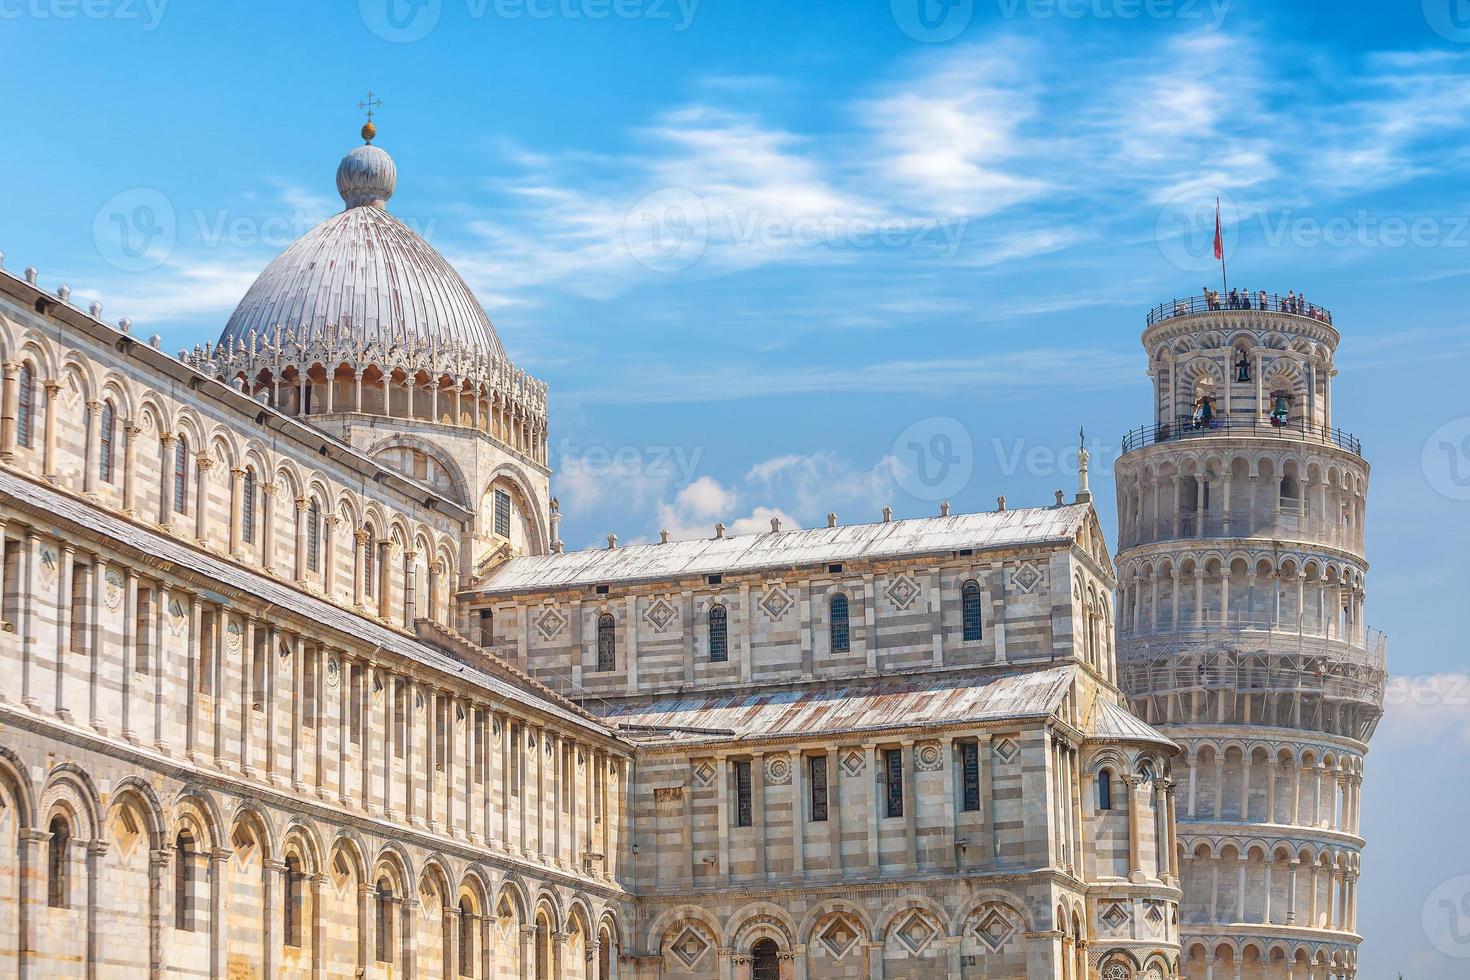 der schiefe Turm, Pisa City Innenstadt Skyline Stadtbild in Italien foto